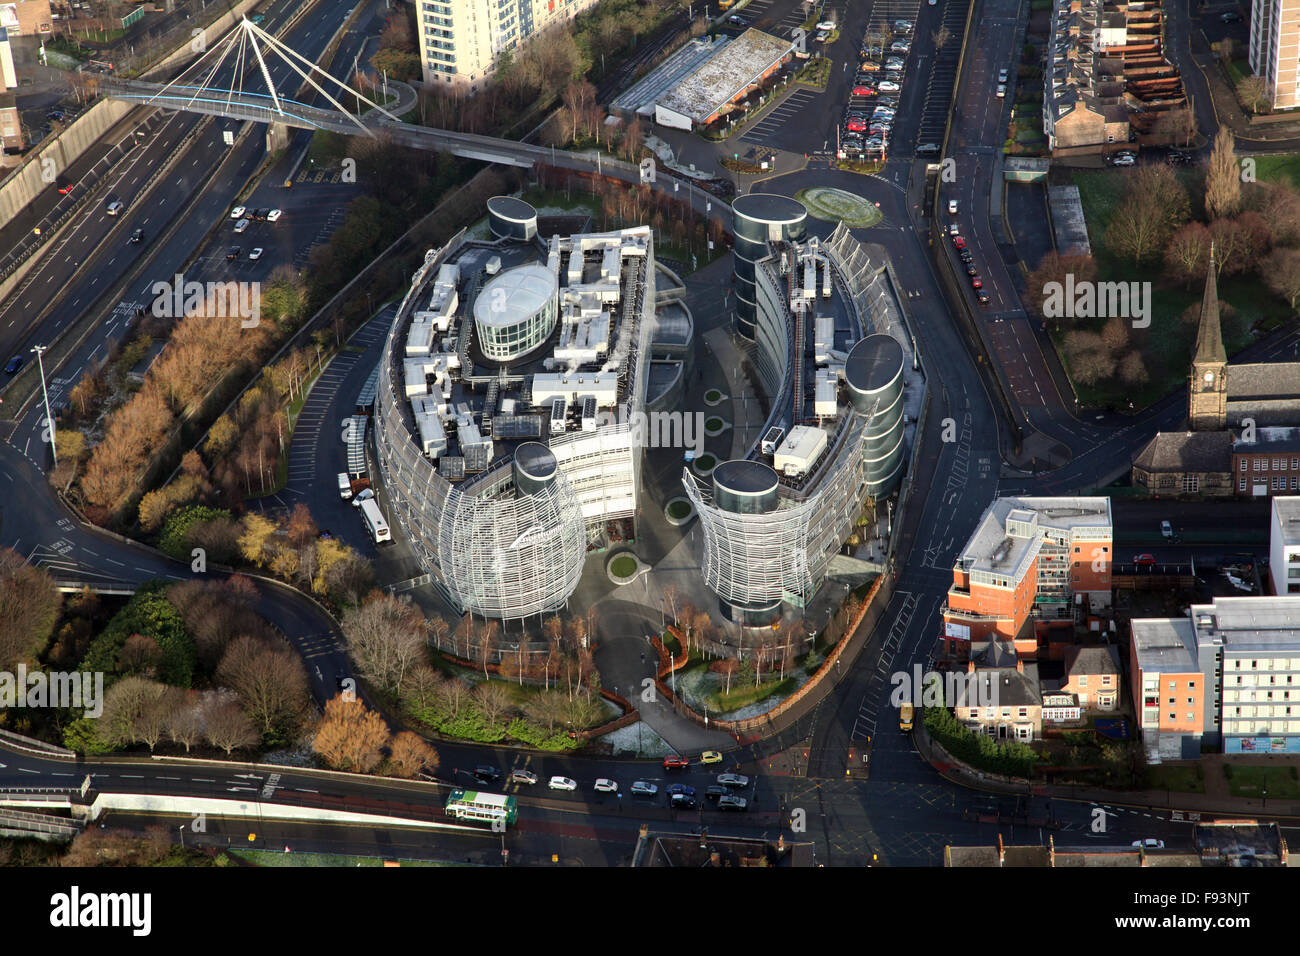 Vue aérienne de Northumbria University Campus en ville est, Newcastle upon Tyne, Royaume-Uni Banque D'Images